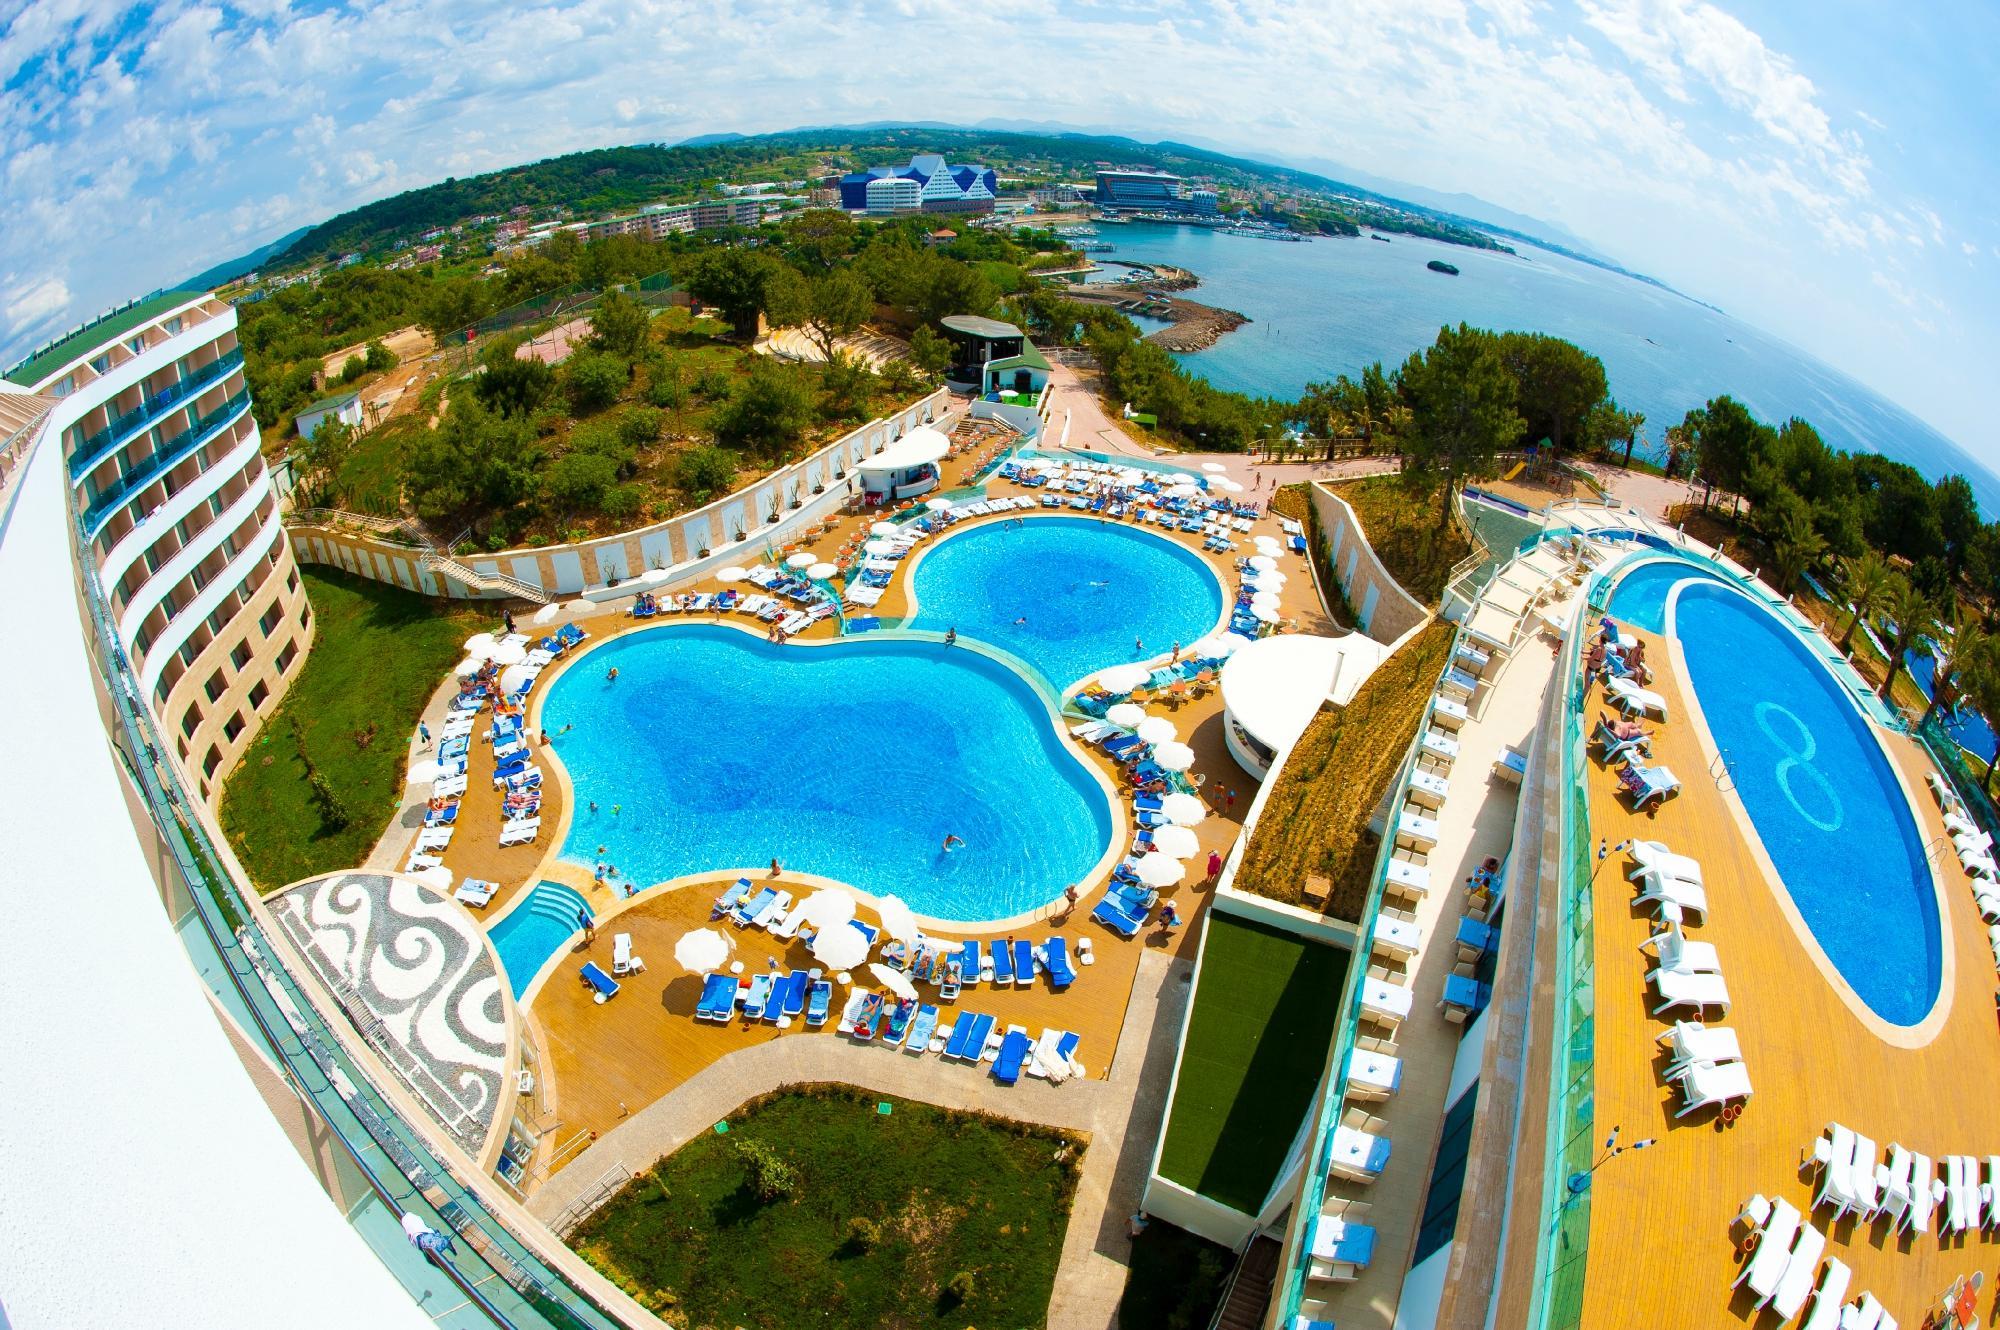 Utopia family resort турция. Water Planet Aquapark Турция. Water Planet Deluxe Hotel Aquapark 5. A good Life Water Planet 5 Турция. Отель Water Planet Deluxe Hotel & Aquapark.